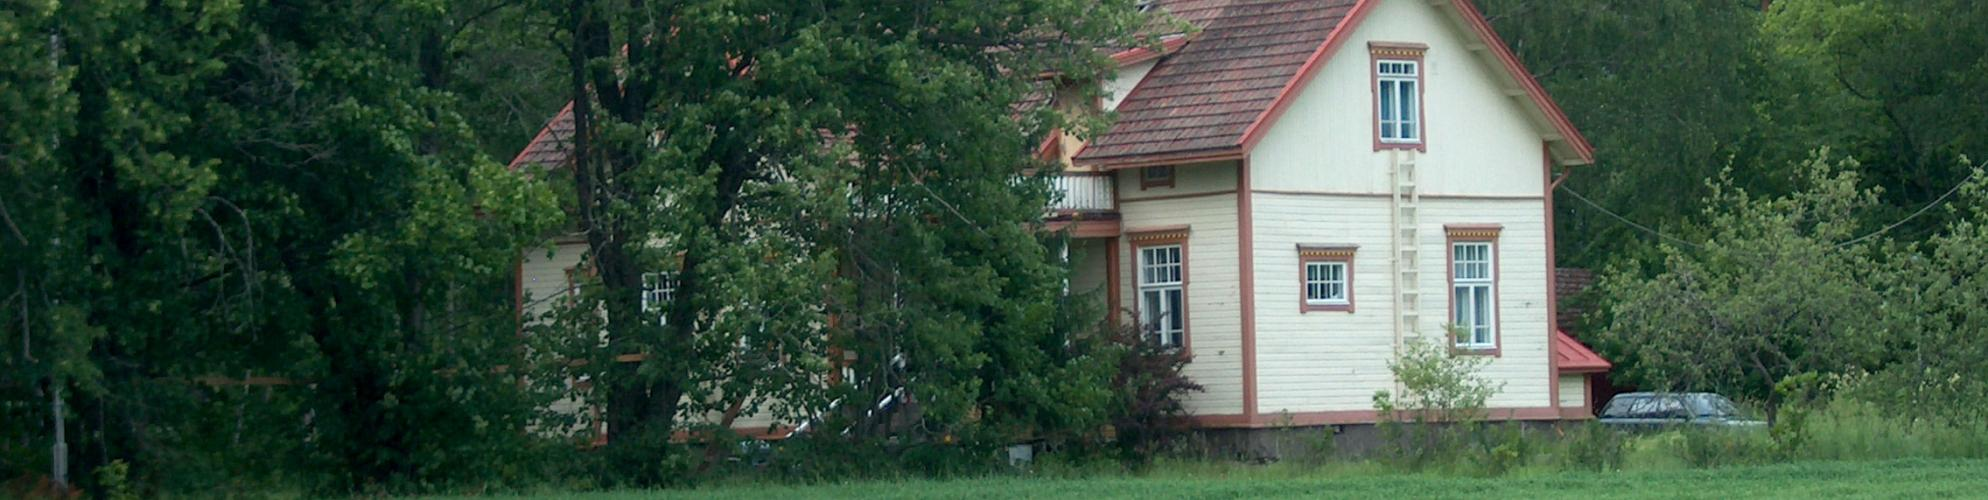 Hanhijärven kylän vanhaa rakennuskantaa, vasemmalla Vanha-Vörsti, oikealla Tammisto 2) Partekin alue. Ihalaisen kalkkikivilouhoksen historia ulottuu 1700-luvulle.